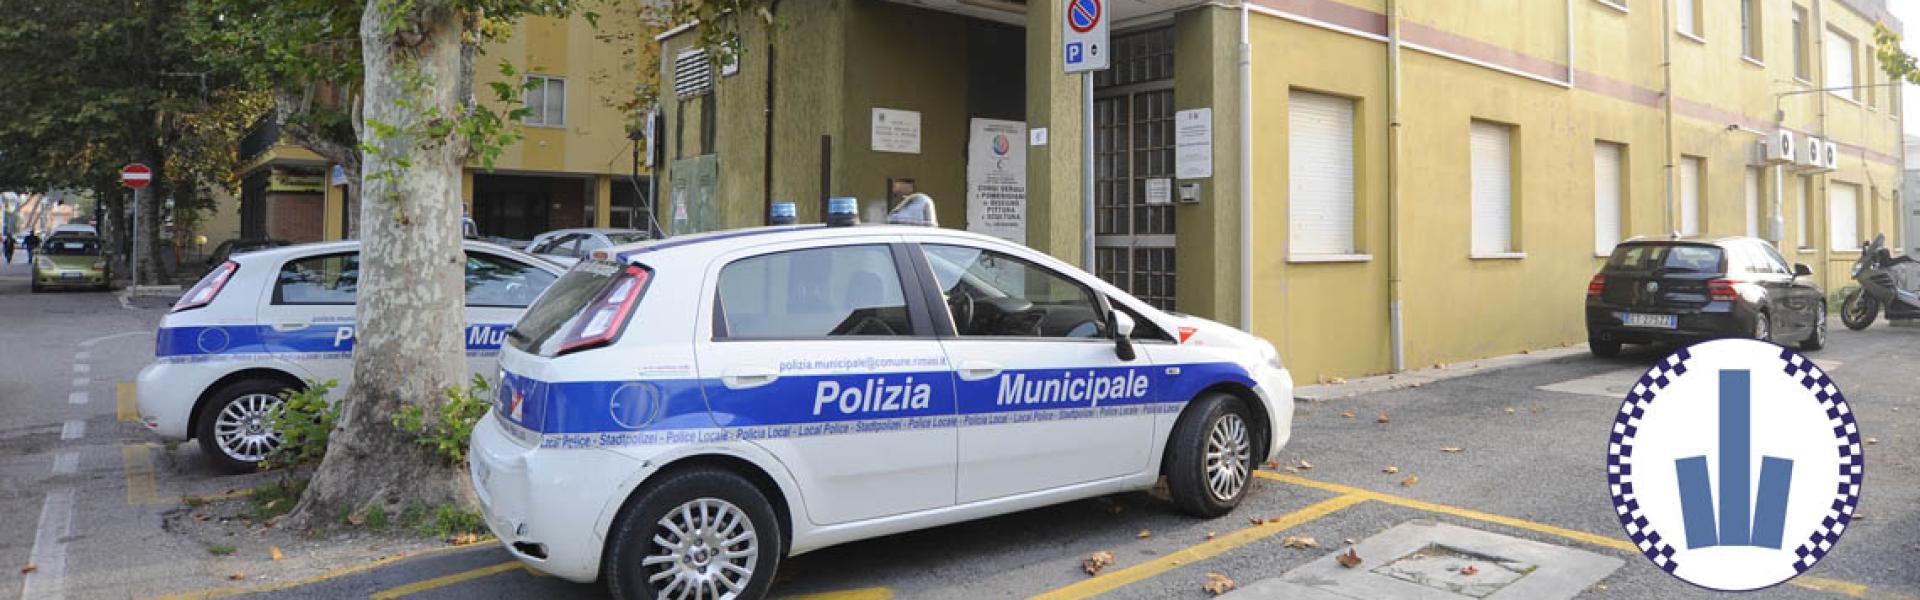 Distaccamento di Miramare - esterno con autovetture della Polizia Municipale